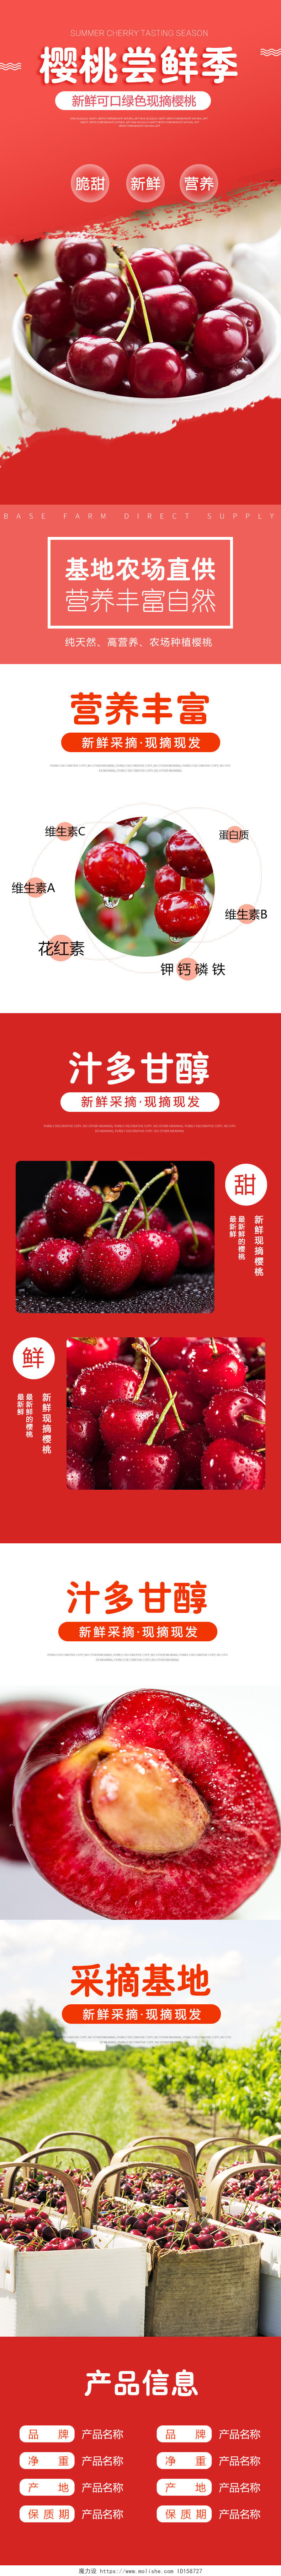 天猫淘宝详情页夏季清凉新鲜水果红色清新进口车厘子樱桃电商促销